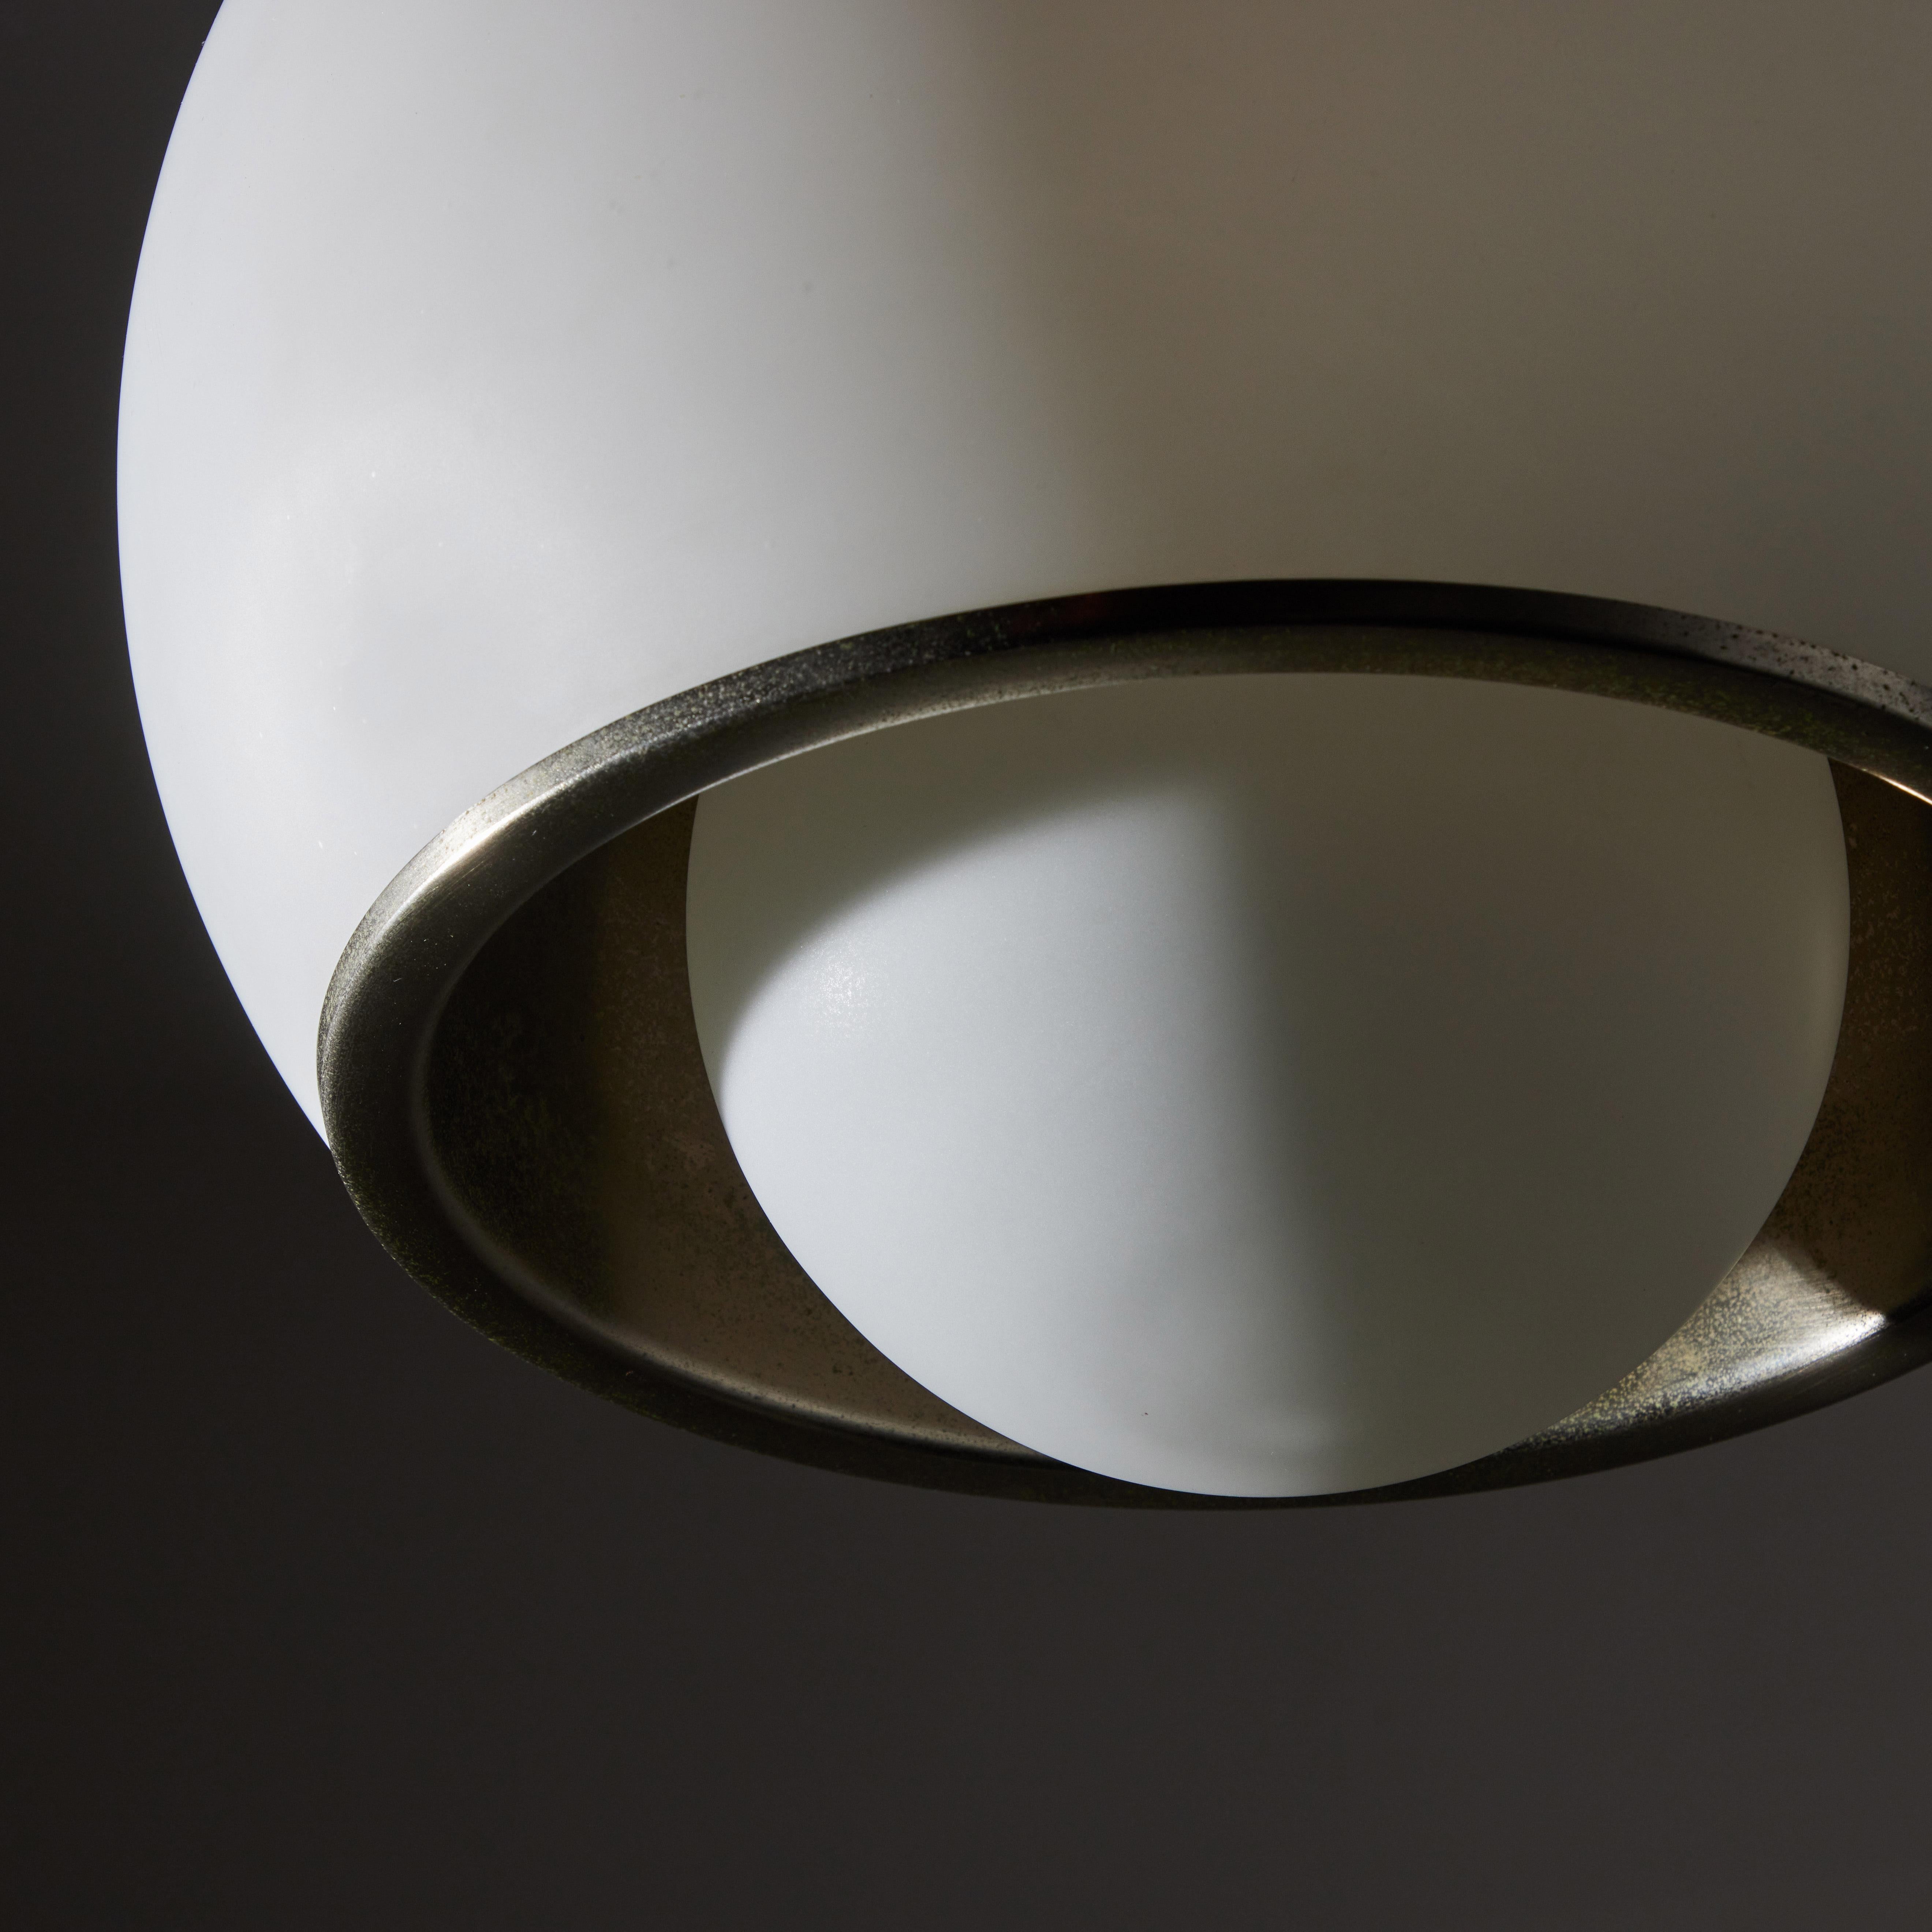 Suspension Light by Fontana Arte 1